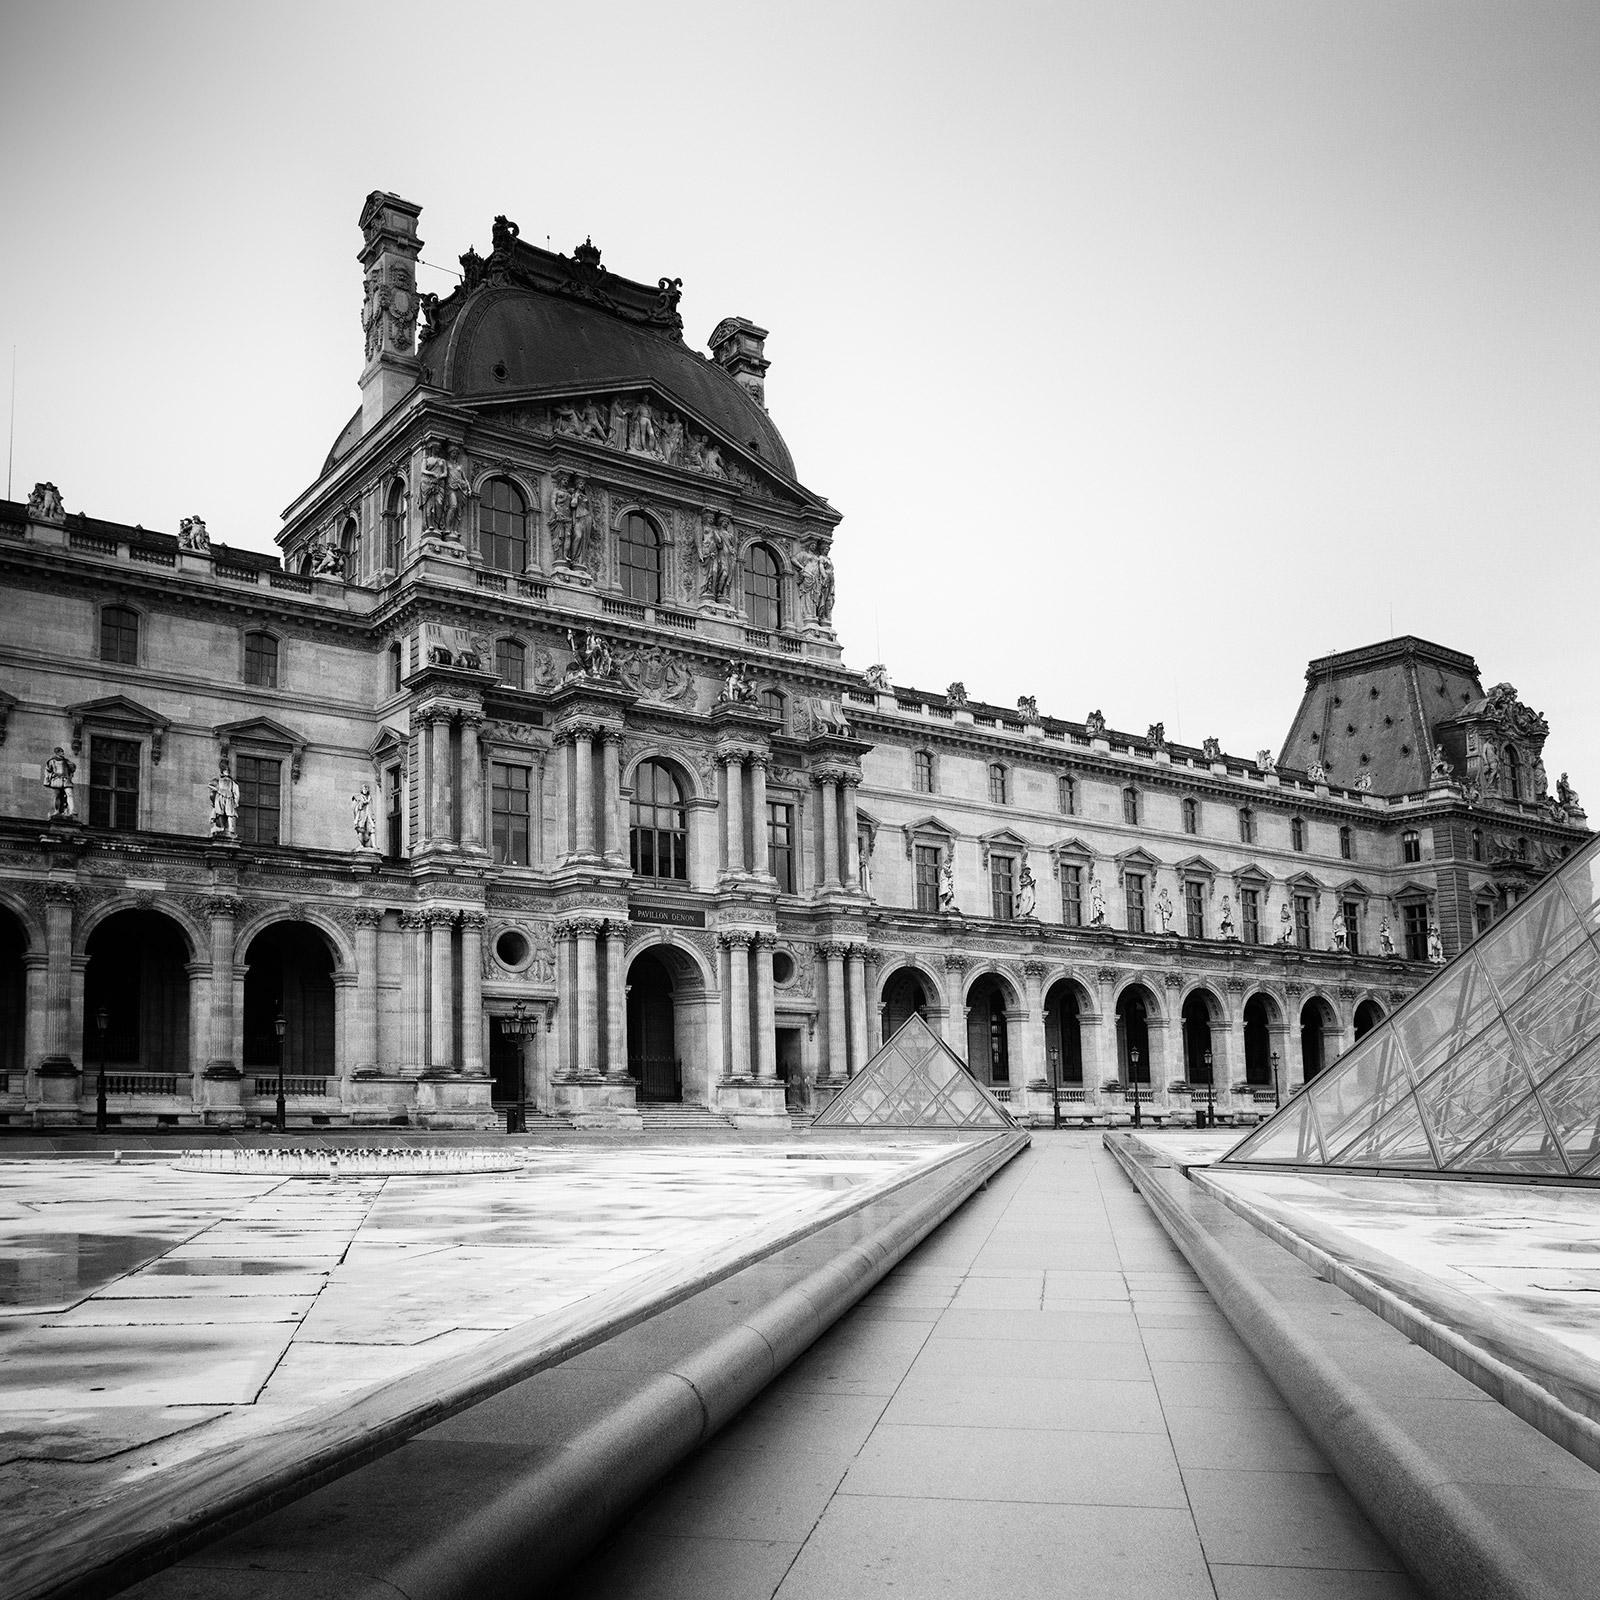 Black and White Photograph Gerald Berghammer - Pavillon Denon, Louvre, Paris, France, photographies de paysages urbains en noir et blanc